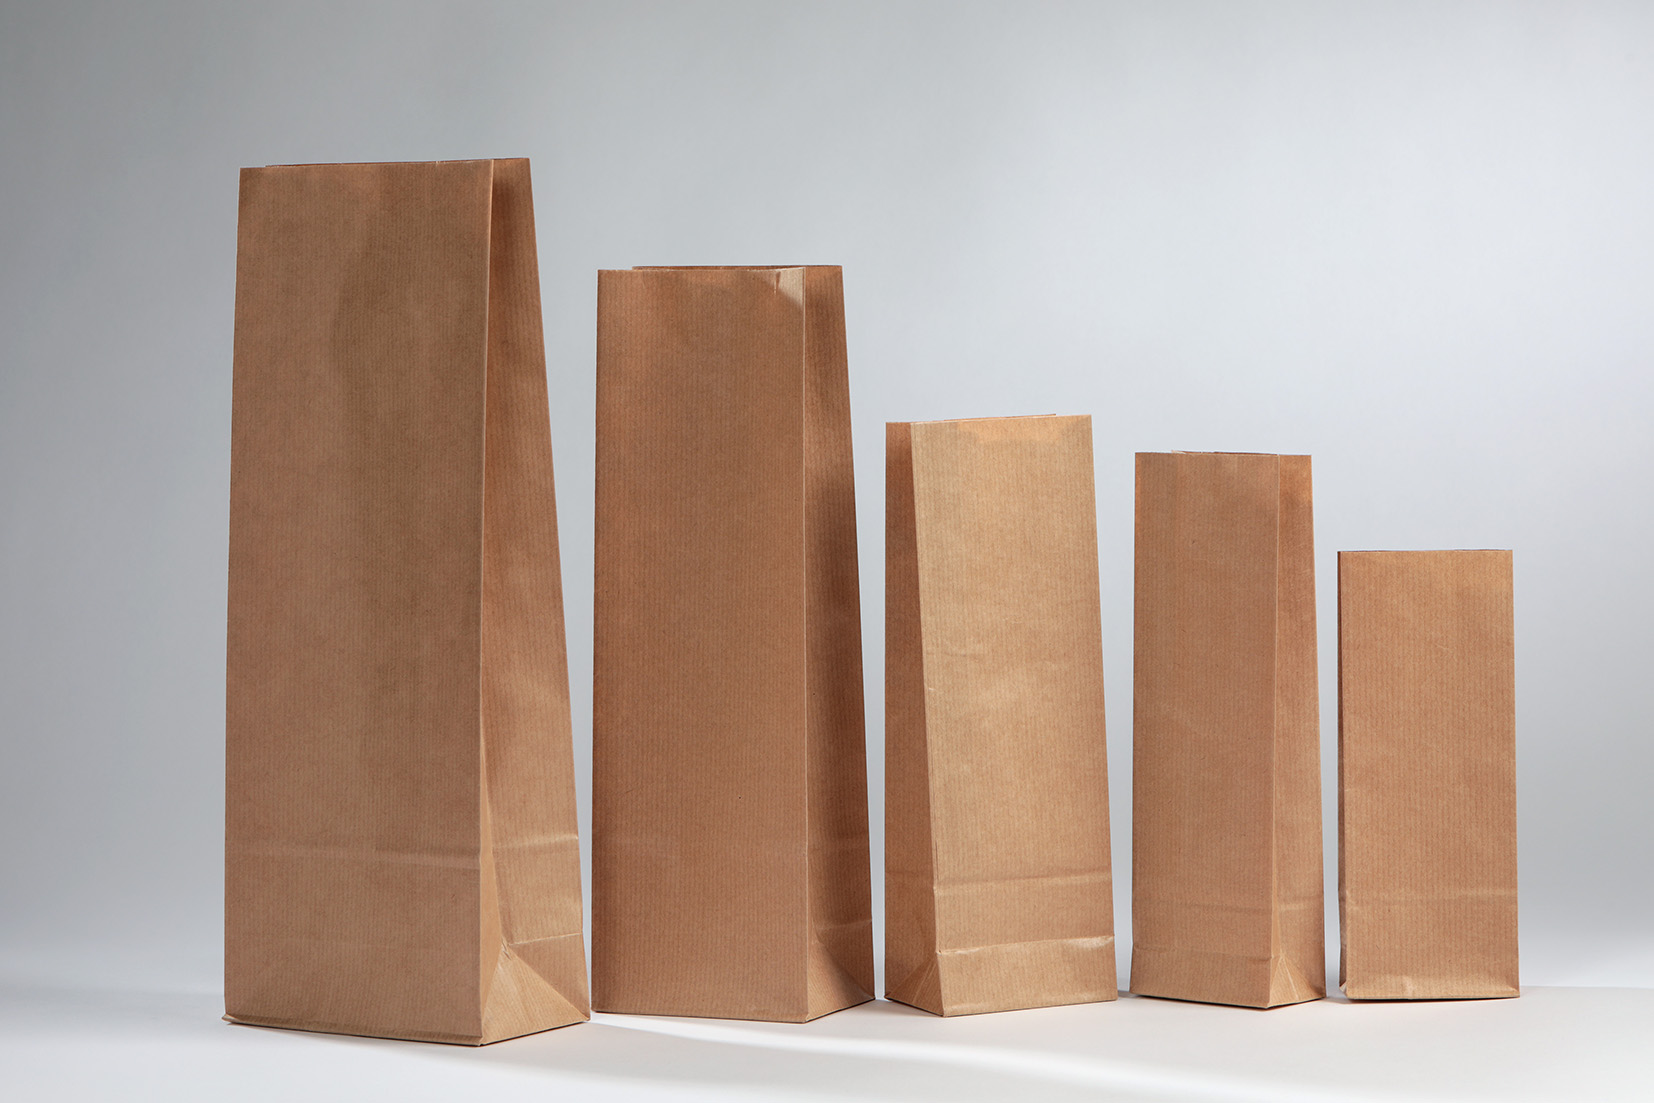 Brown paper bags with metallised OPP foil – packaging